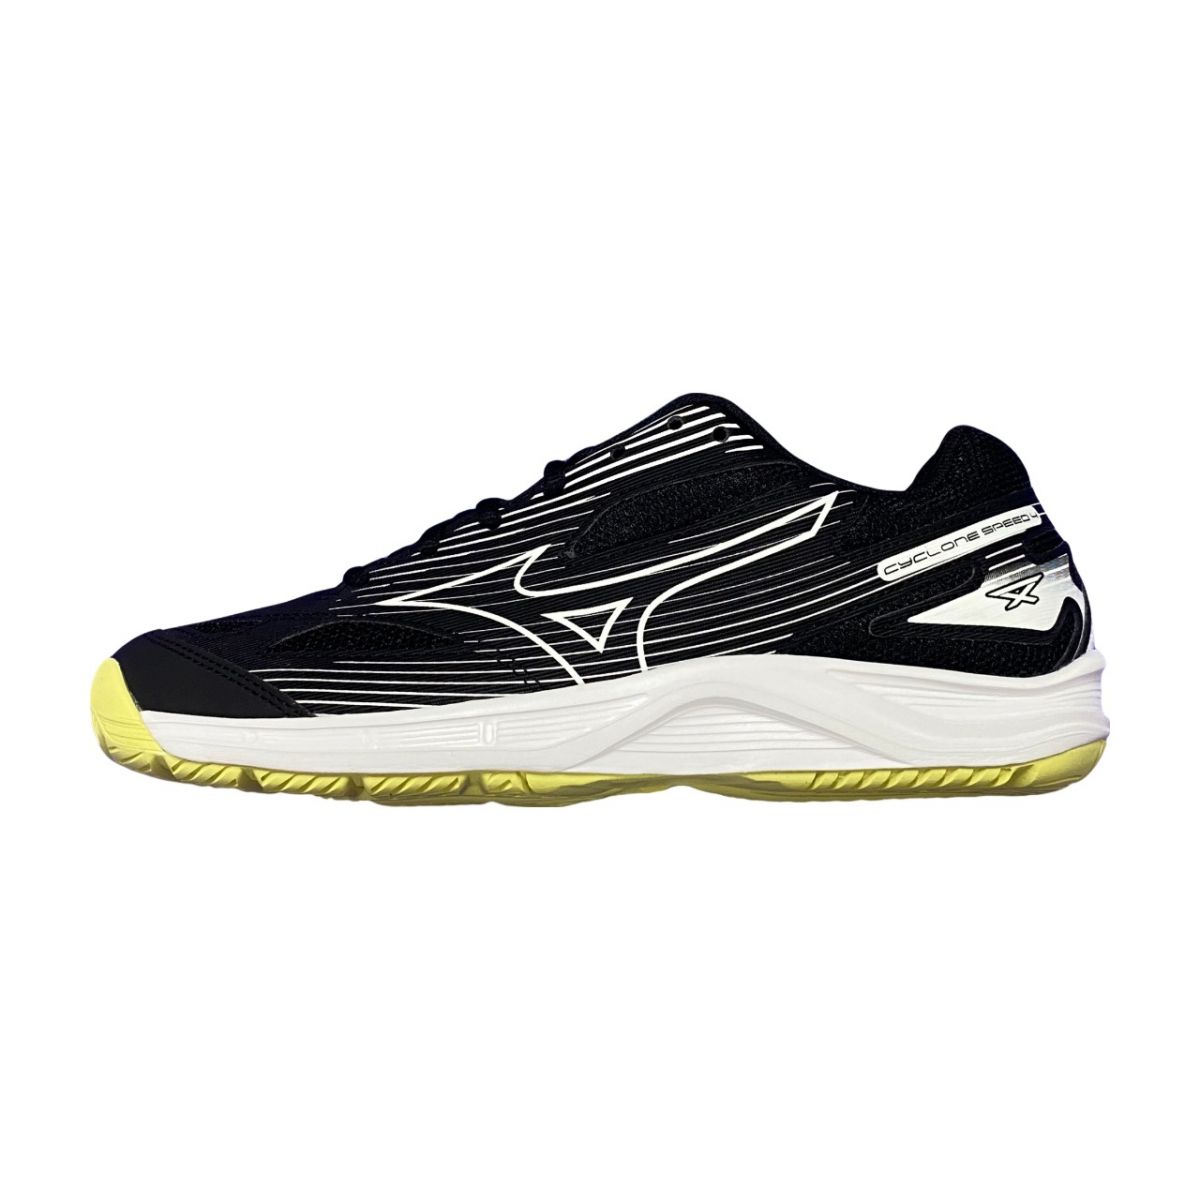 Giày cầu lông Mizuno Cyclone Speed 4 - Đen trắng vàng chính hãng (V1GA238012)